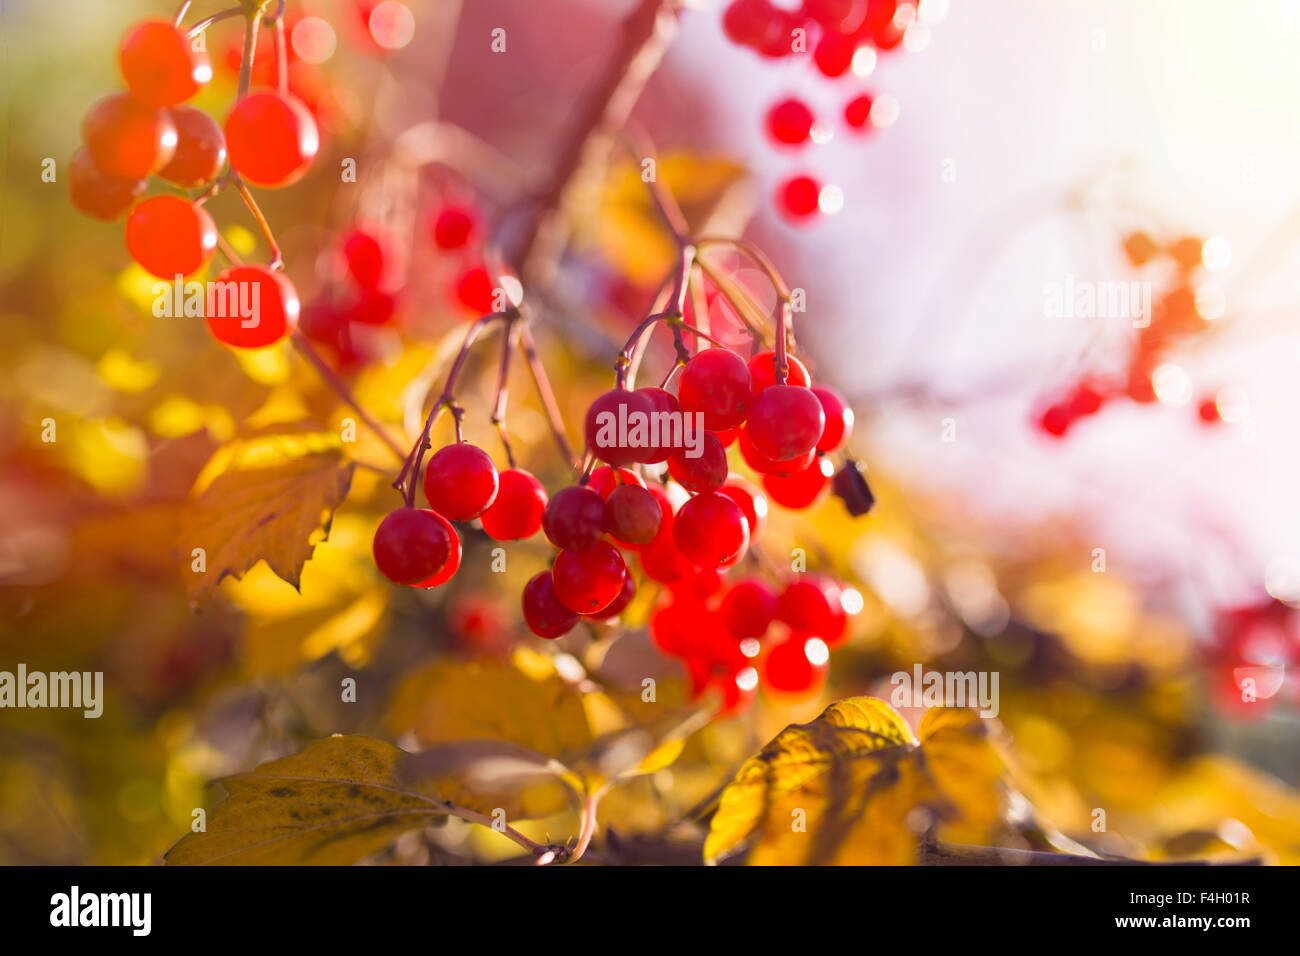 Les baies de la Viorne rouge dans l'arbre, automne fond Banque D'Images